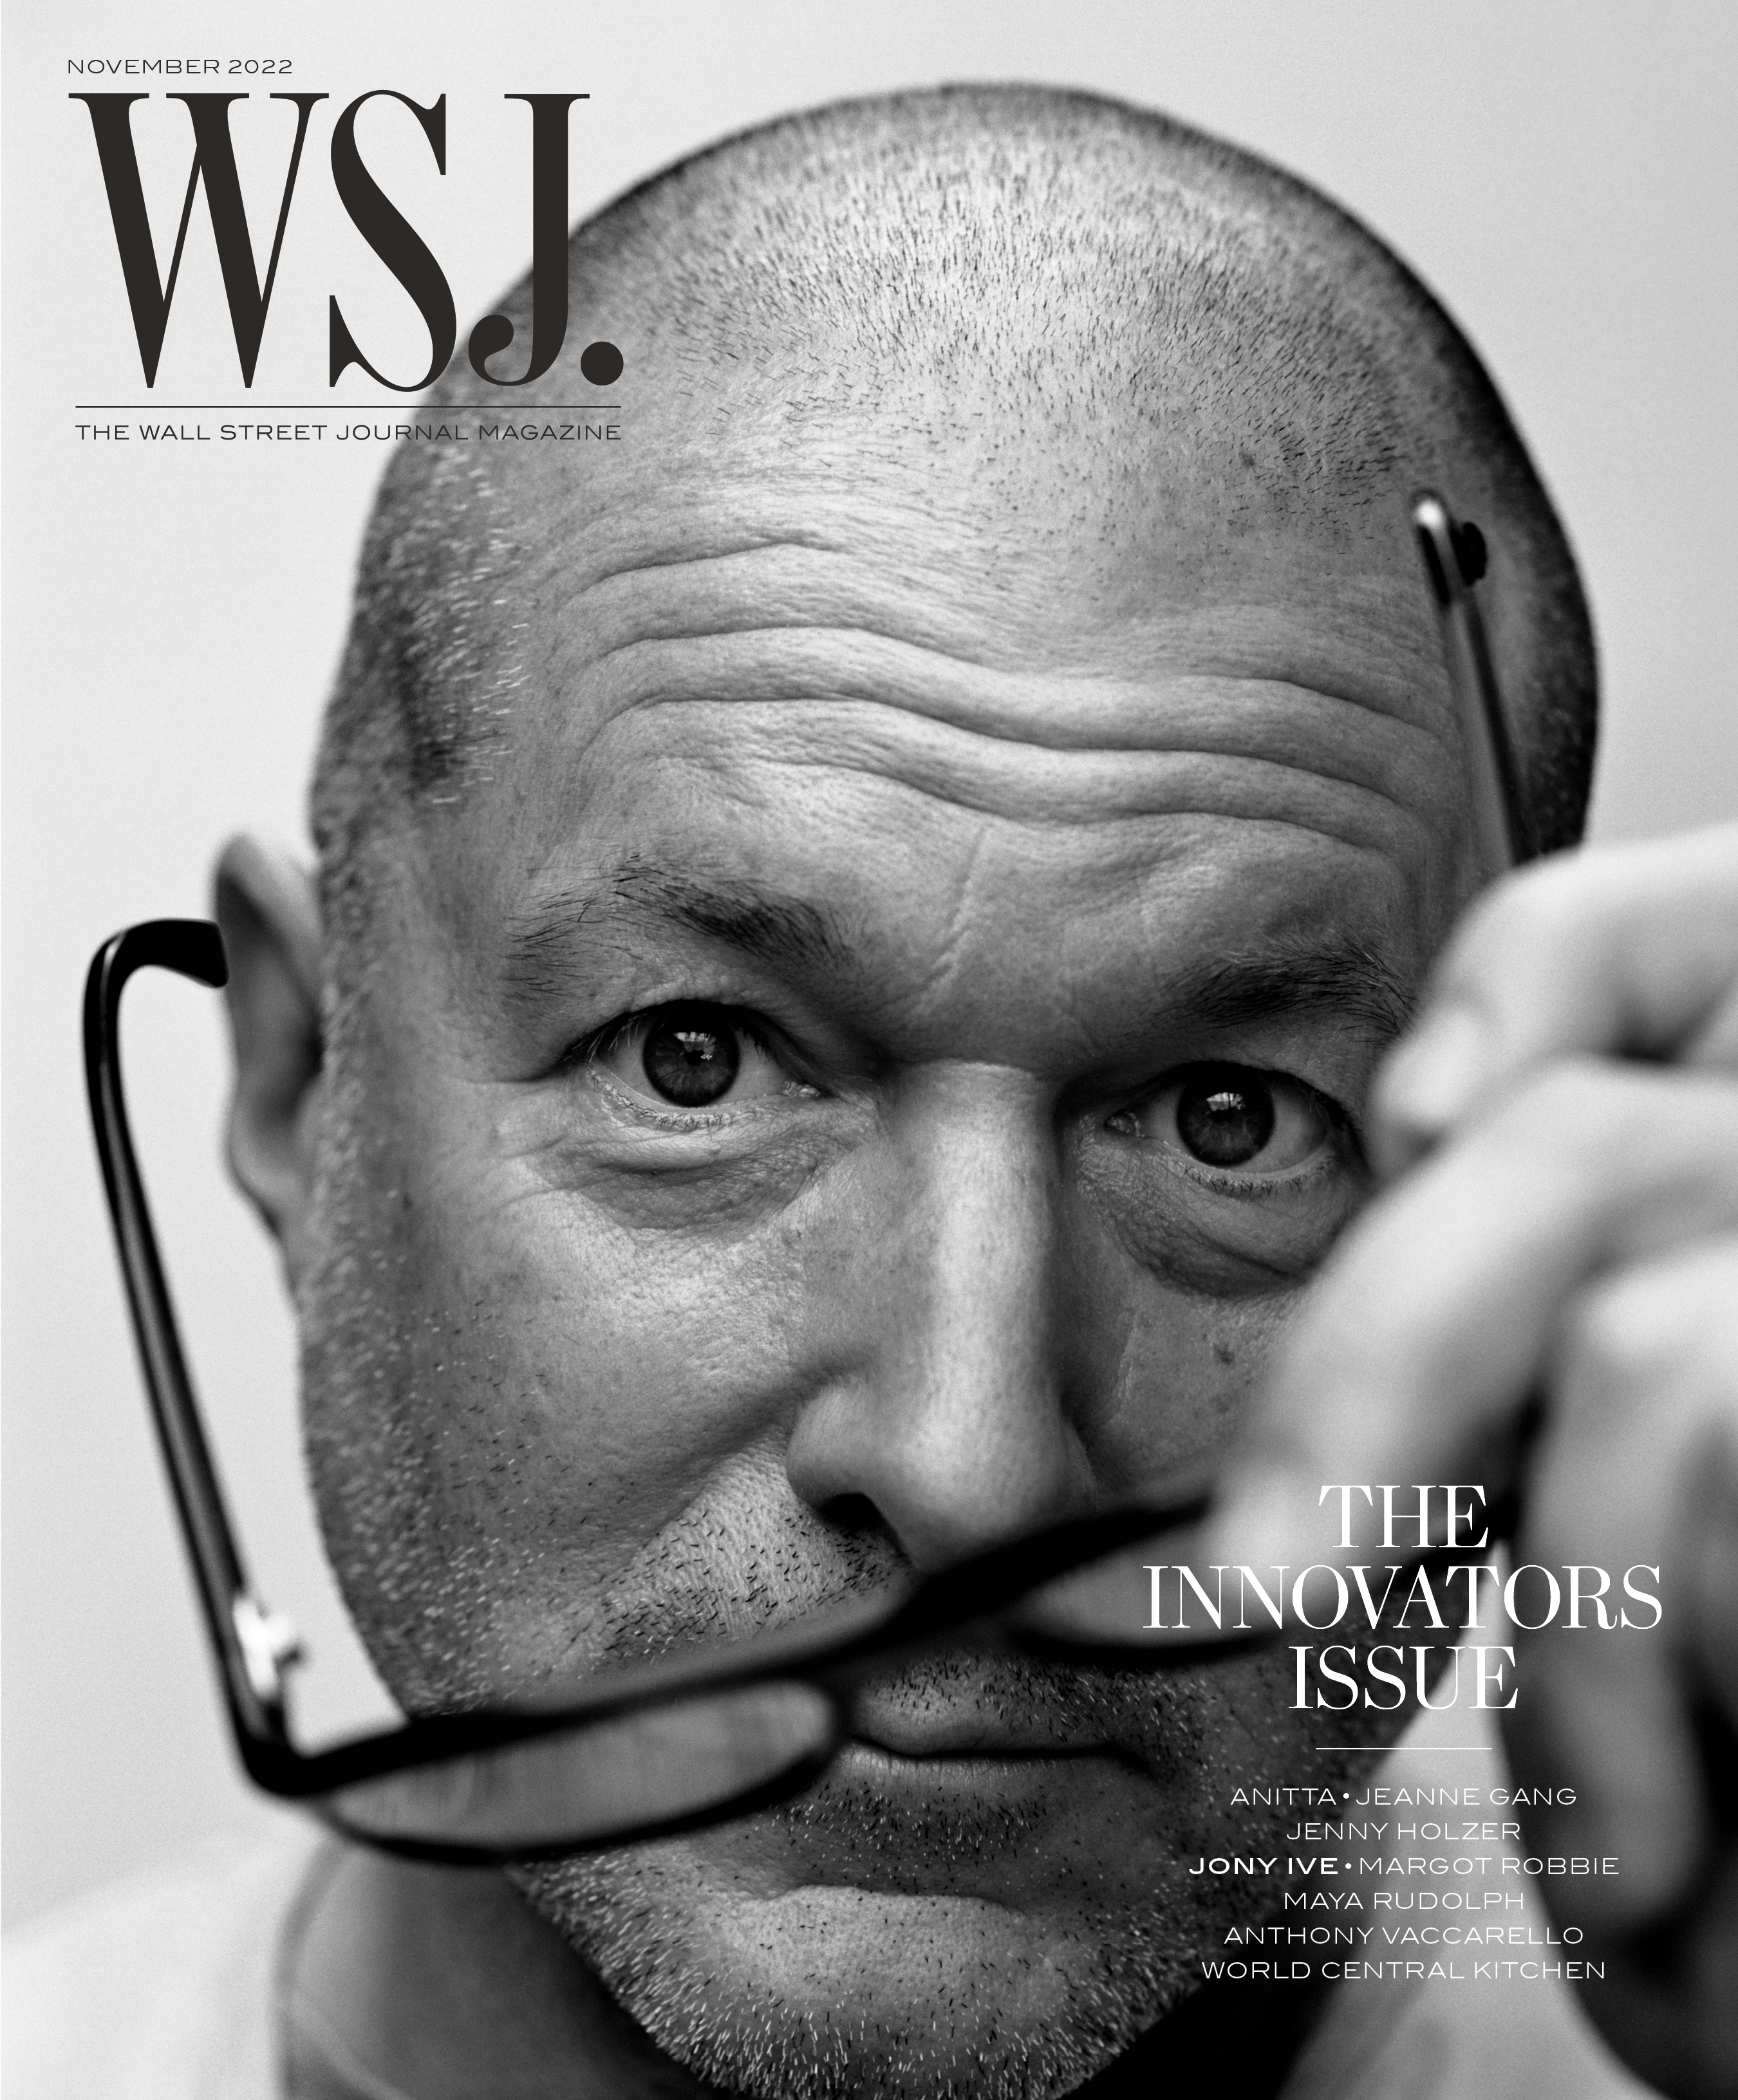 WSJ. Magazine - “The Innovators Issue” November 2022